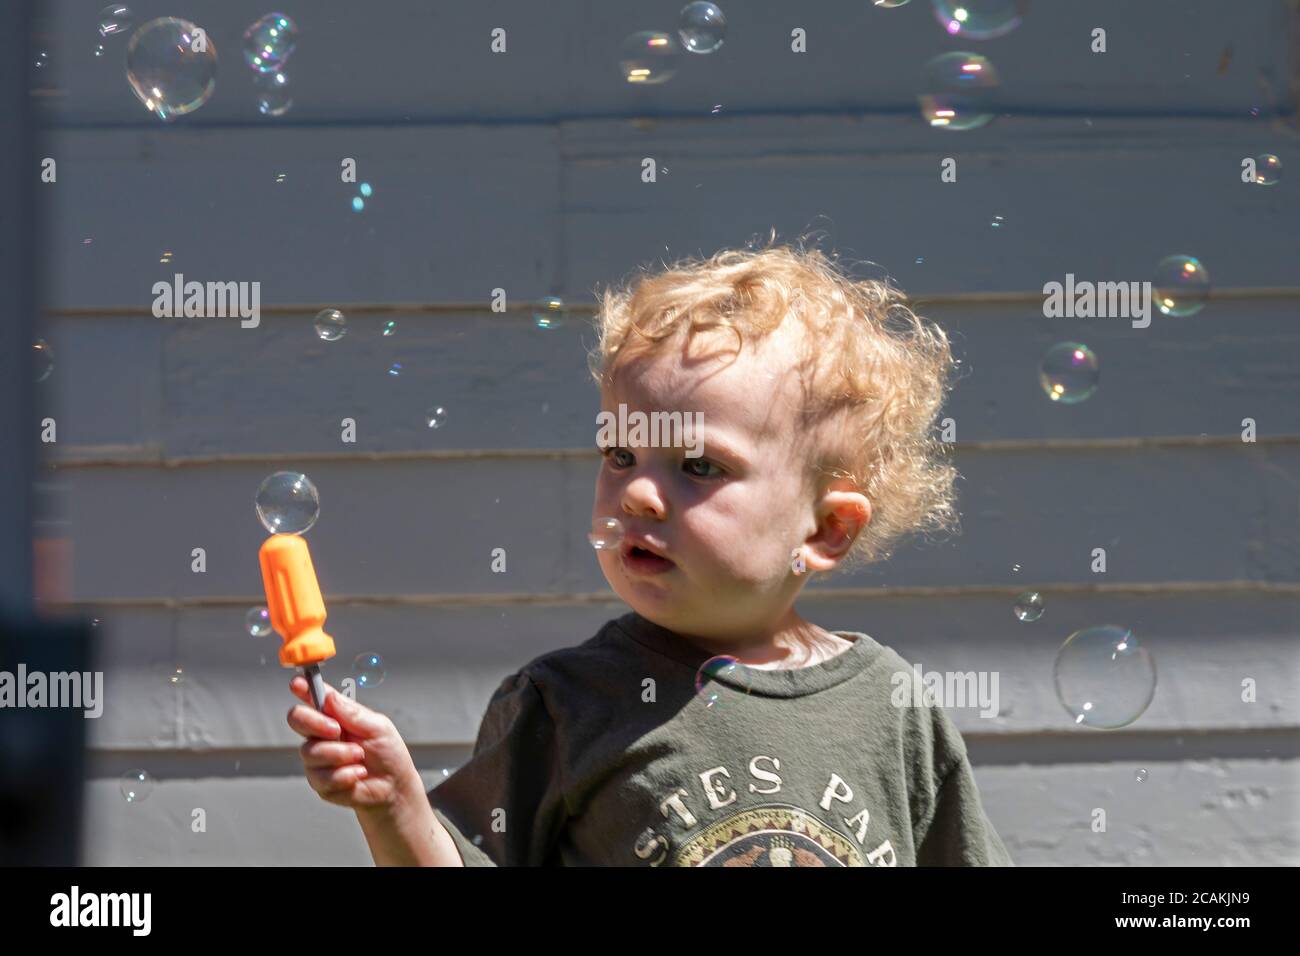 Denver, Colorado - die zweijährige Hendrix Hjermstad ist fasziniert von Blasen, die durch eine Blasenmaschine entstehen. Stockfoto